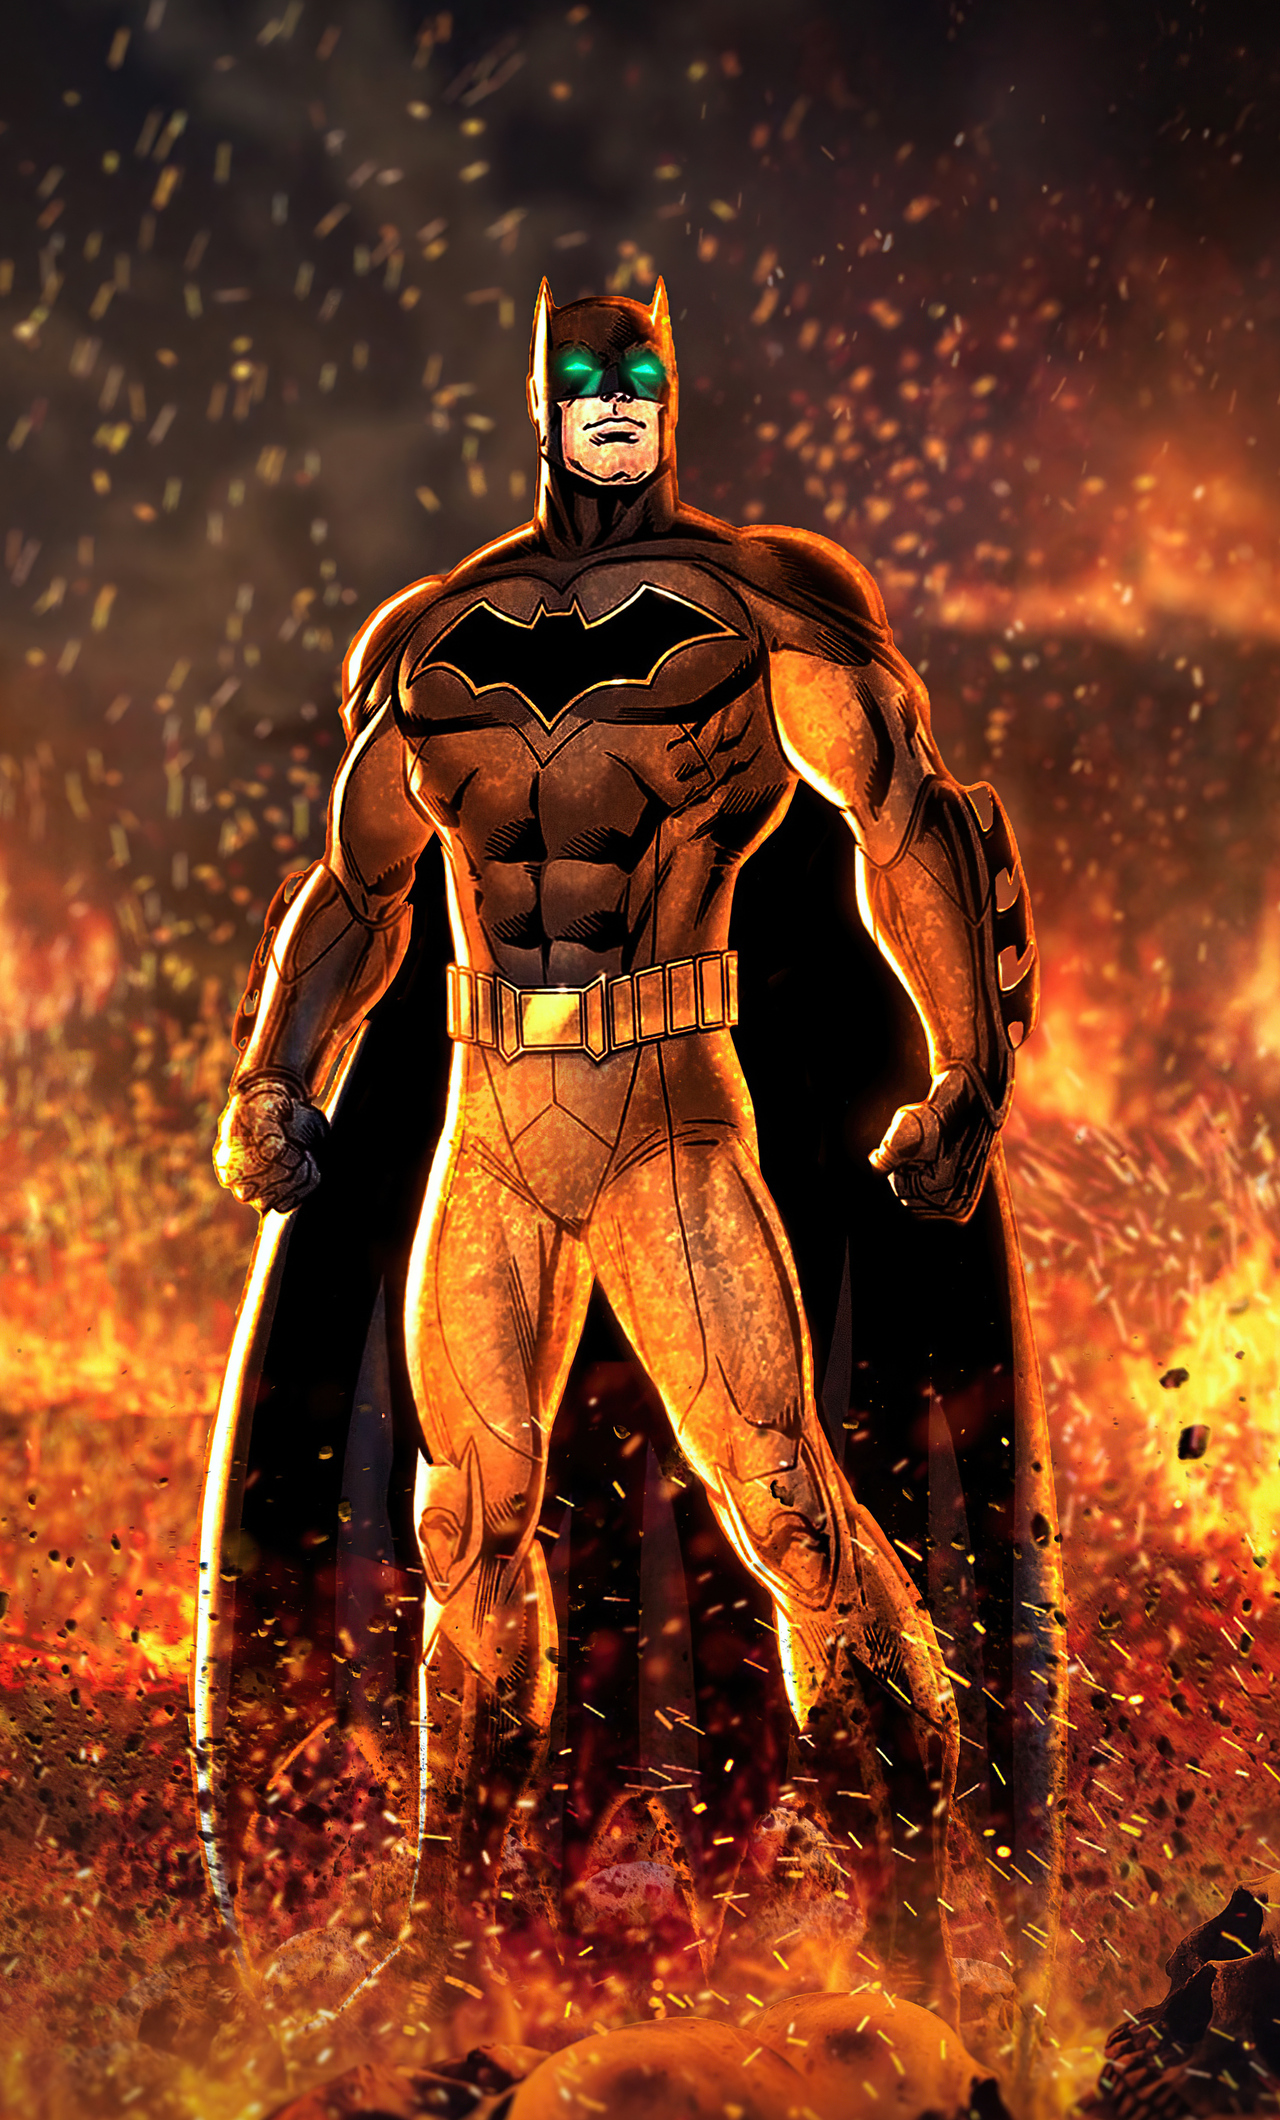 batman-artwork-2020-4k-4h.jpg